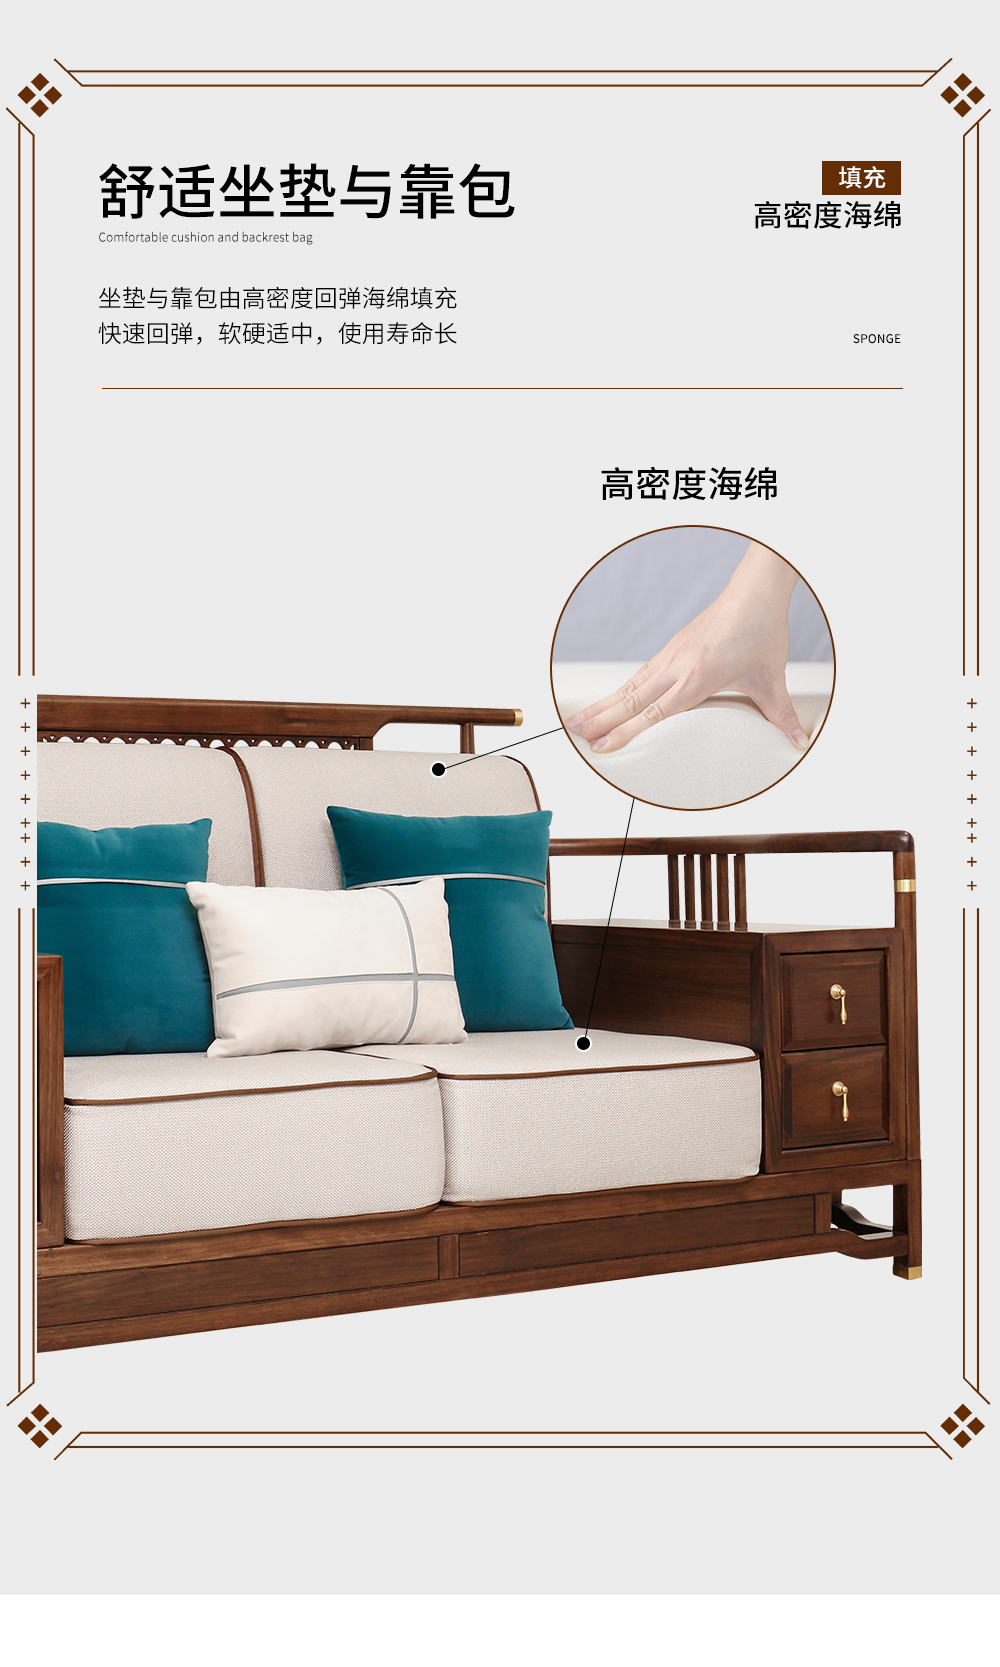 新中式沙发_08.jpg